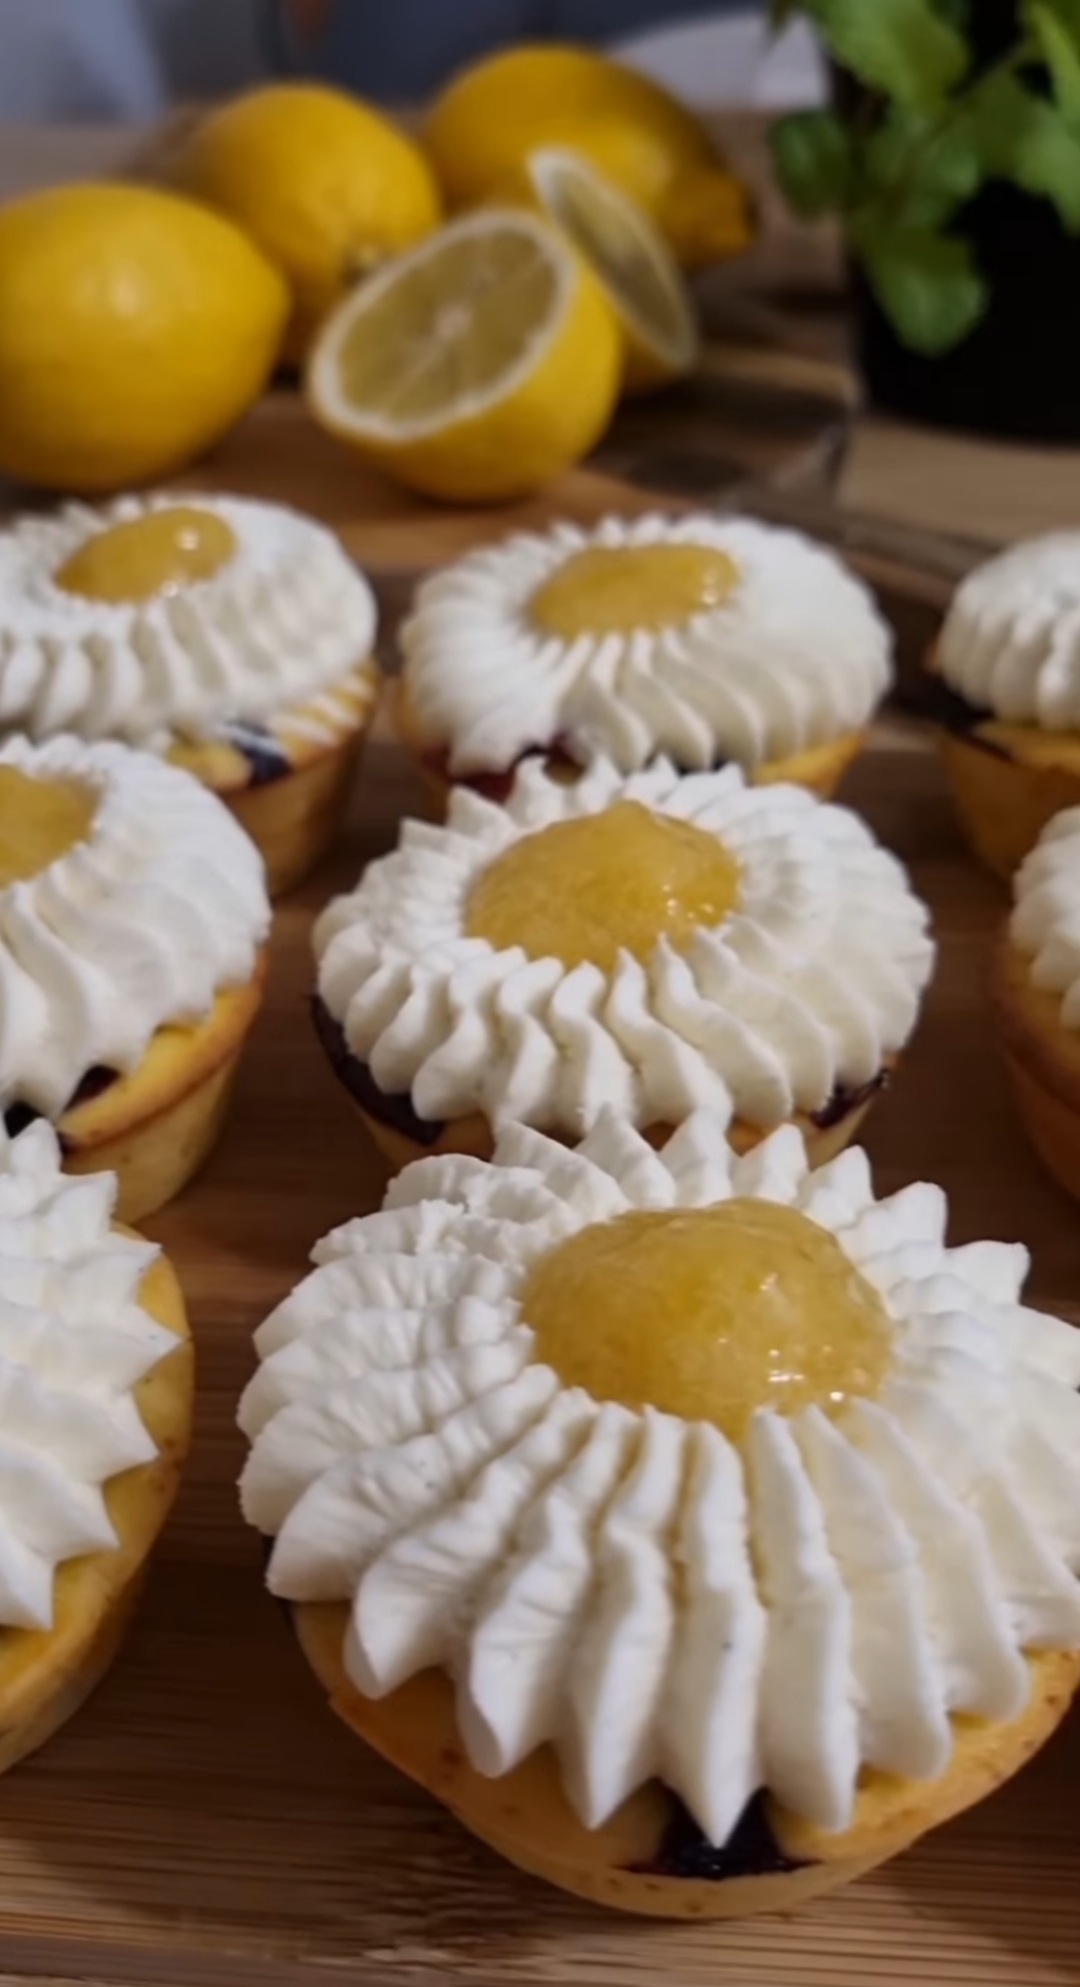 Food influencer bira: Iva Horvat otkriva recept za limun muffine s kremom od bijele čokolade i marelice